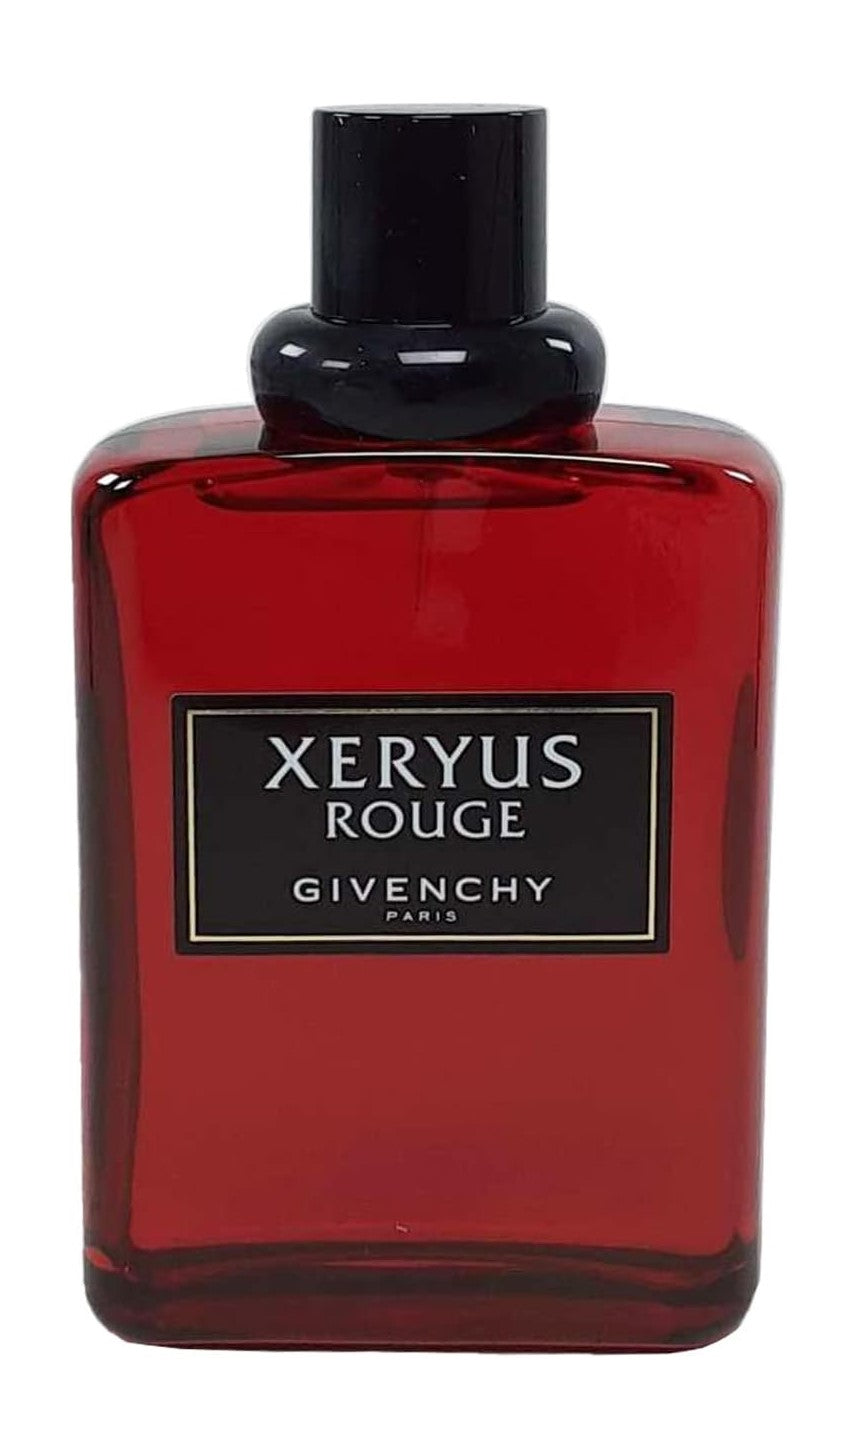 Givenchy Xeryus Rouge For Men - Eau De Toilette - 100ml